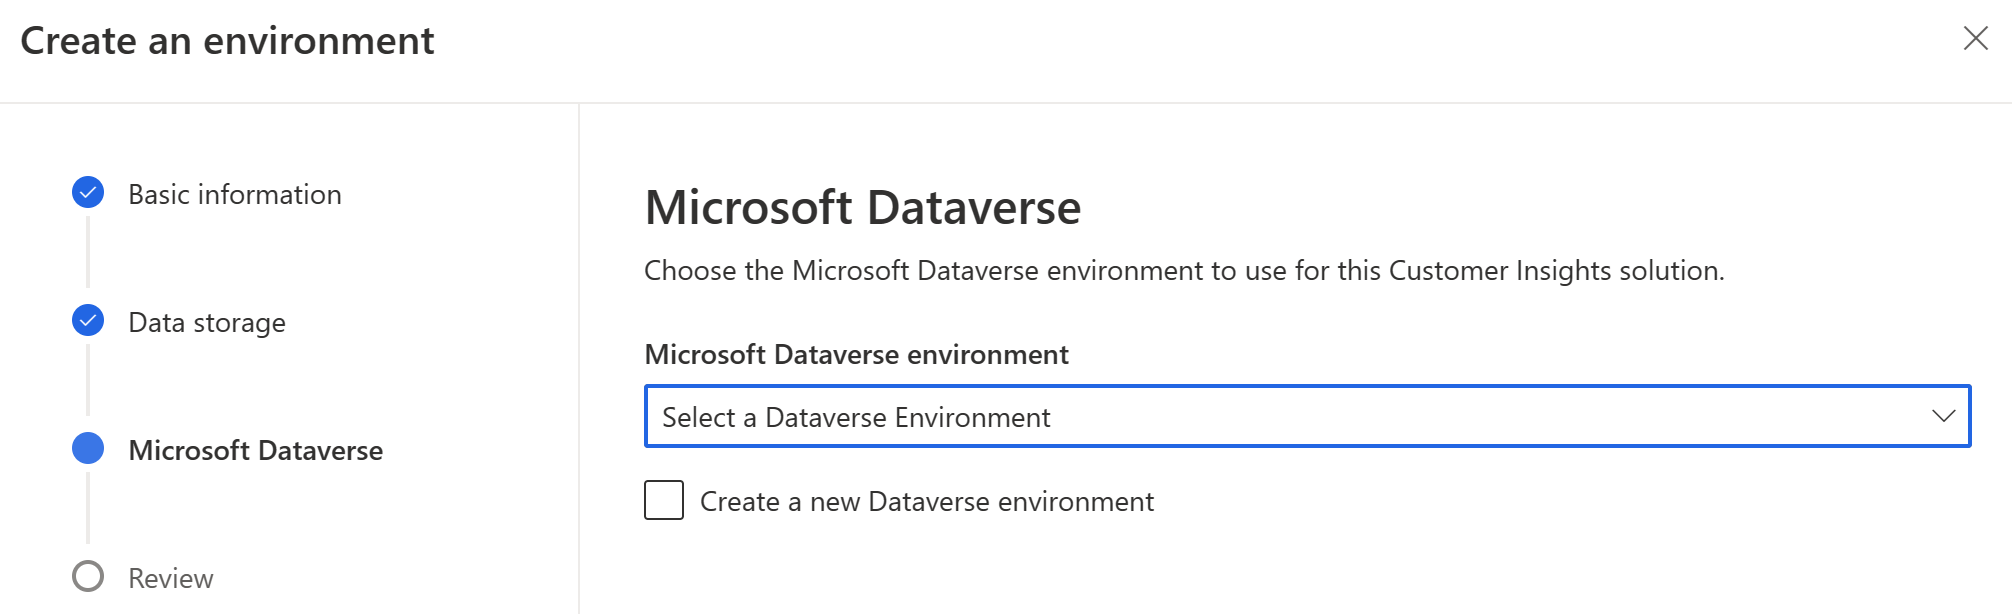 partage de données avec Microsoft Dataverse activé automatiquement pour les nouveaux environnements.